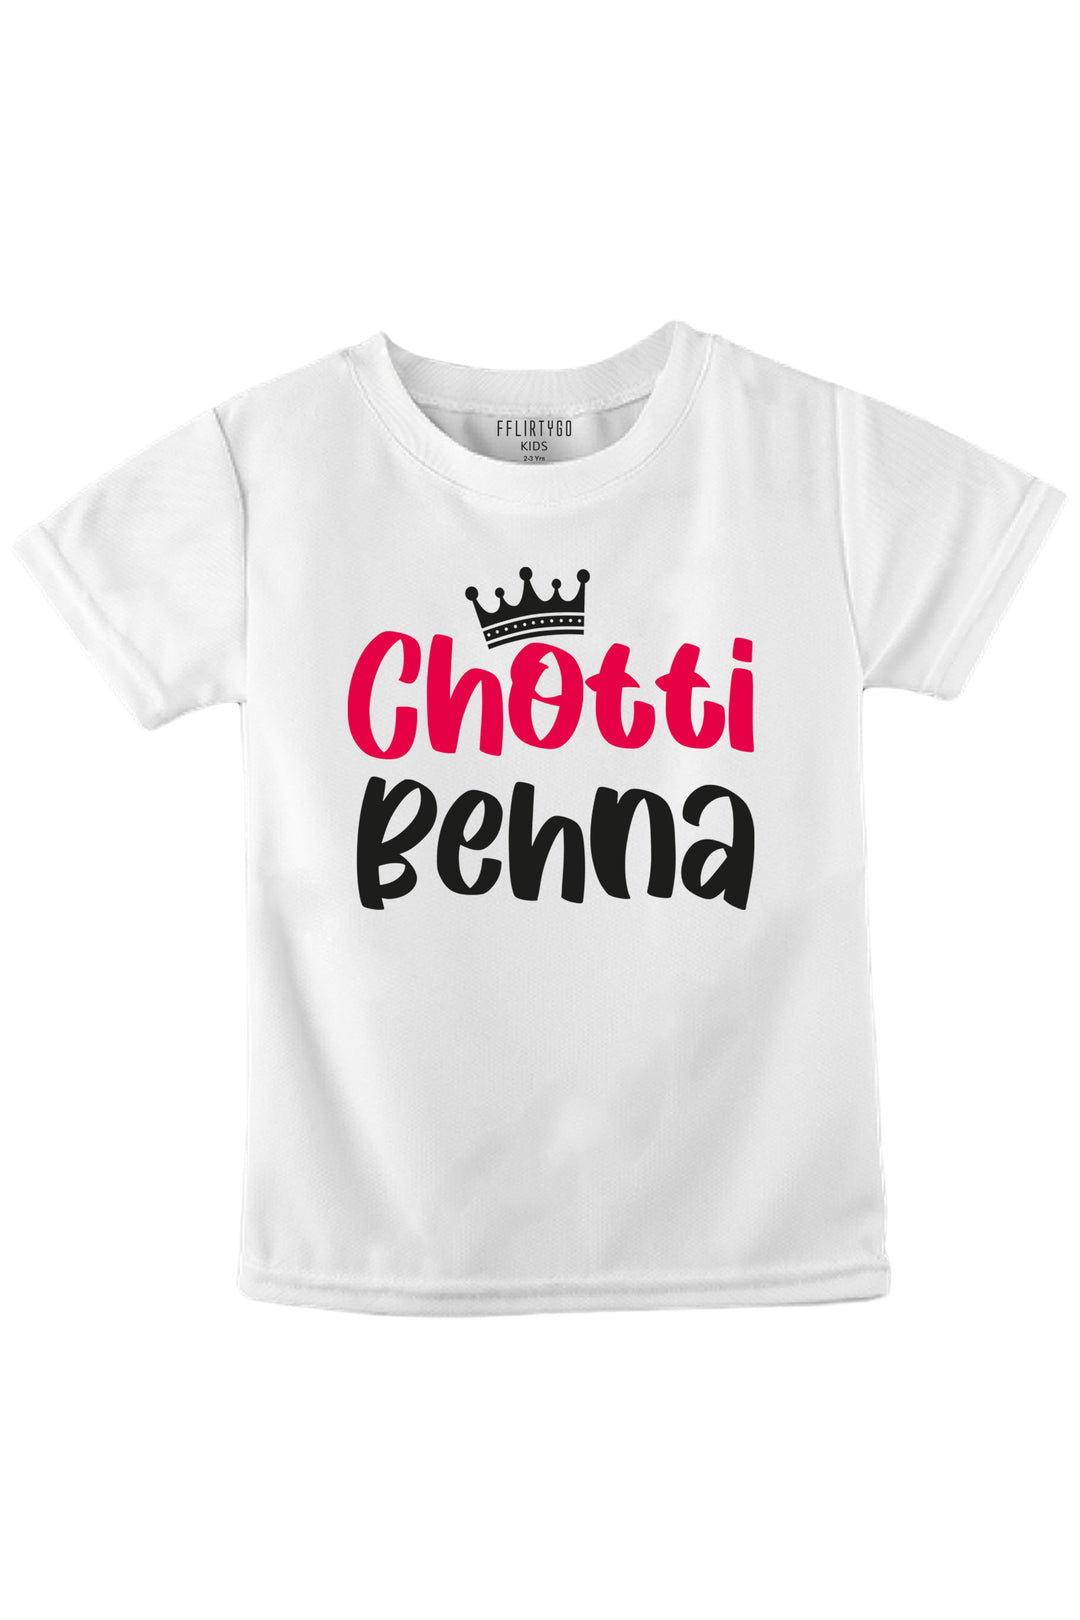 Chotti Behna